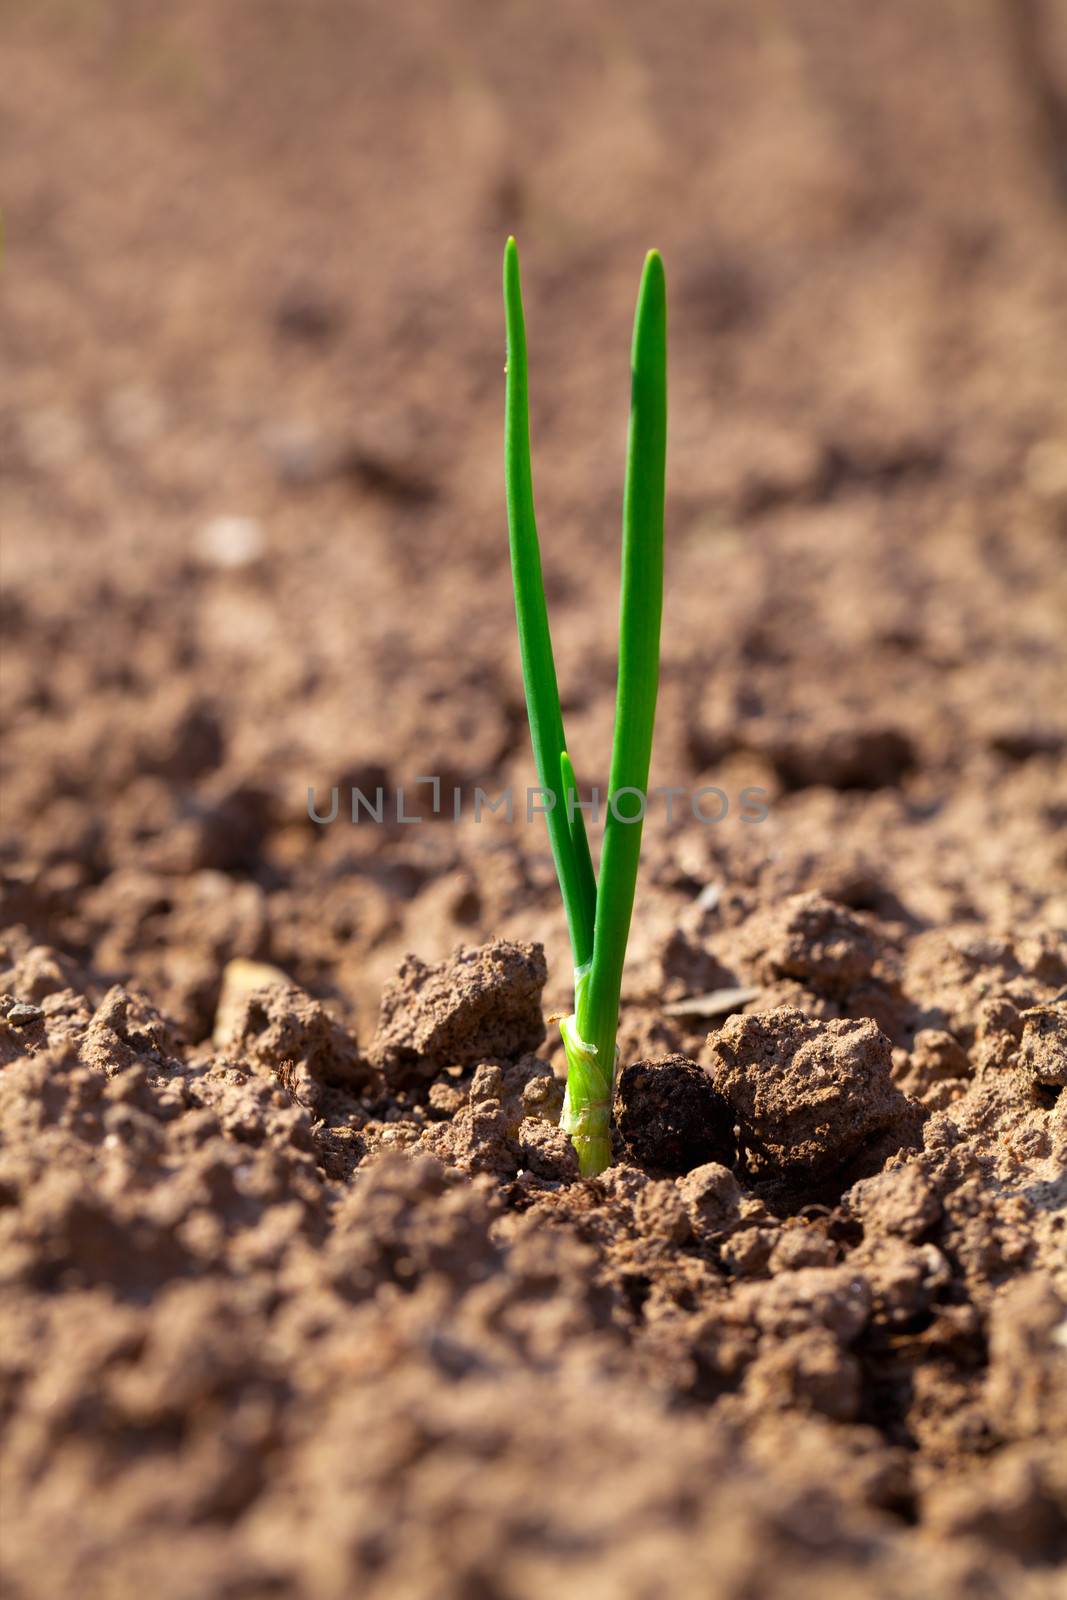 small onion growing in soil by motorolka